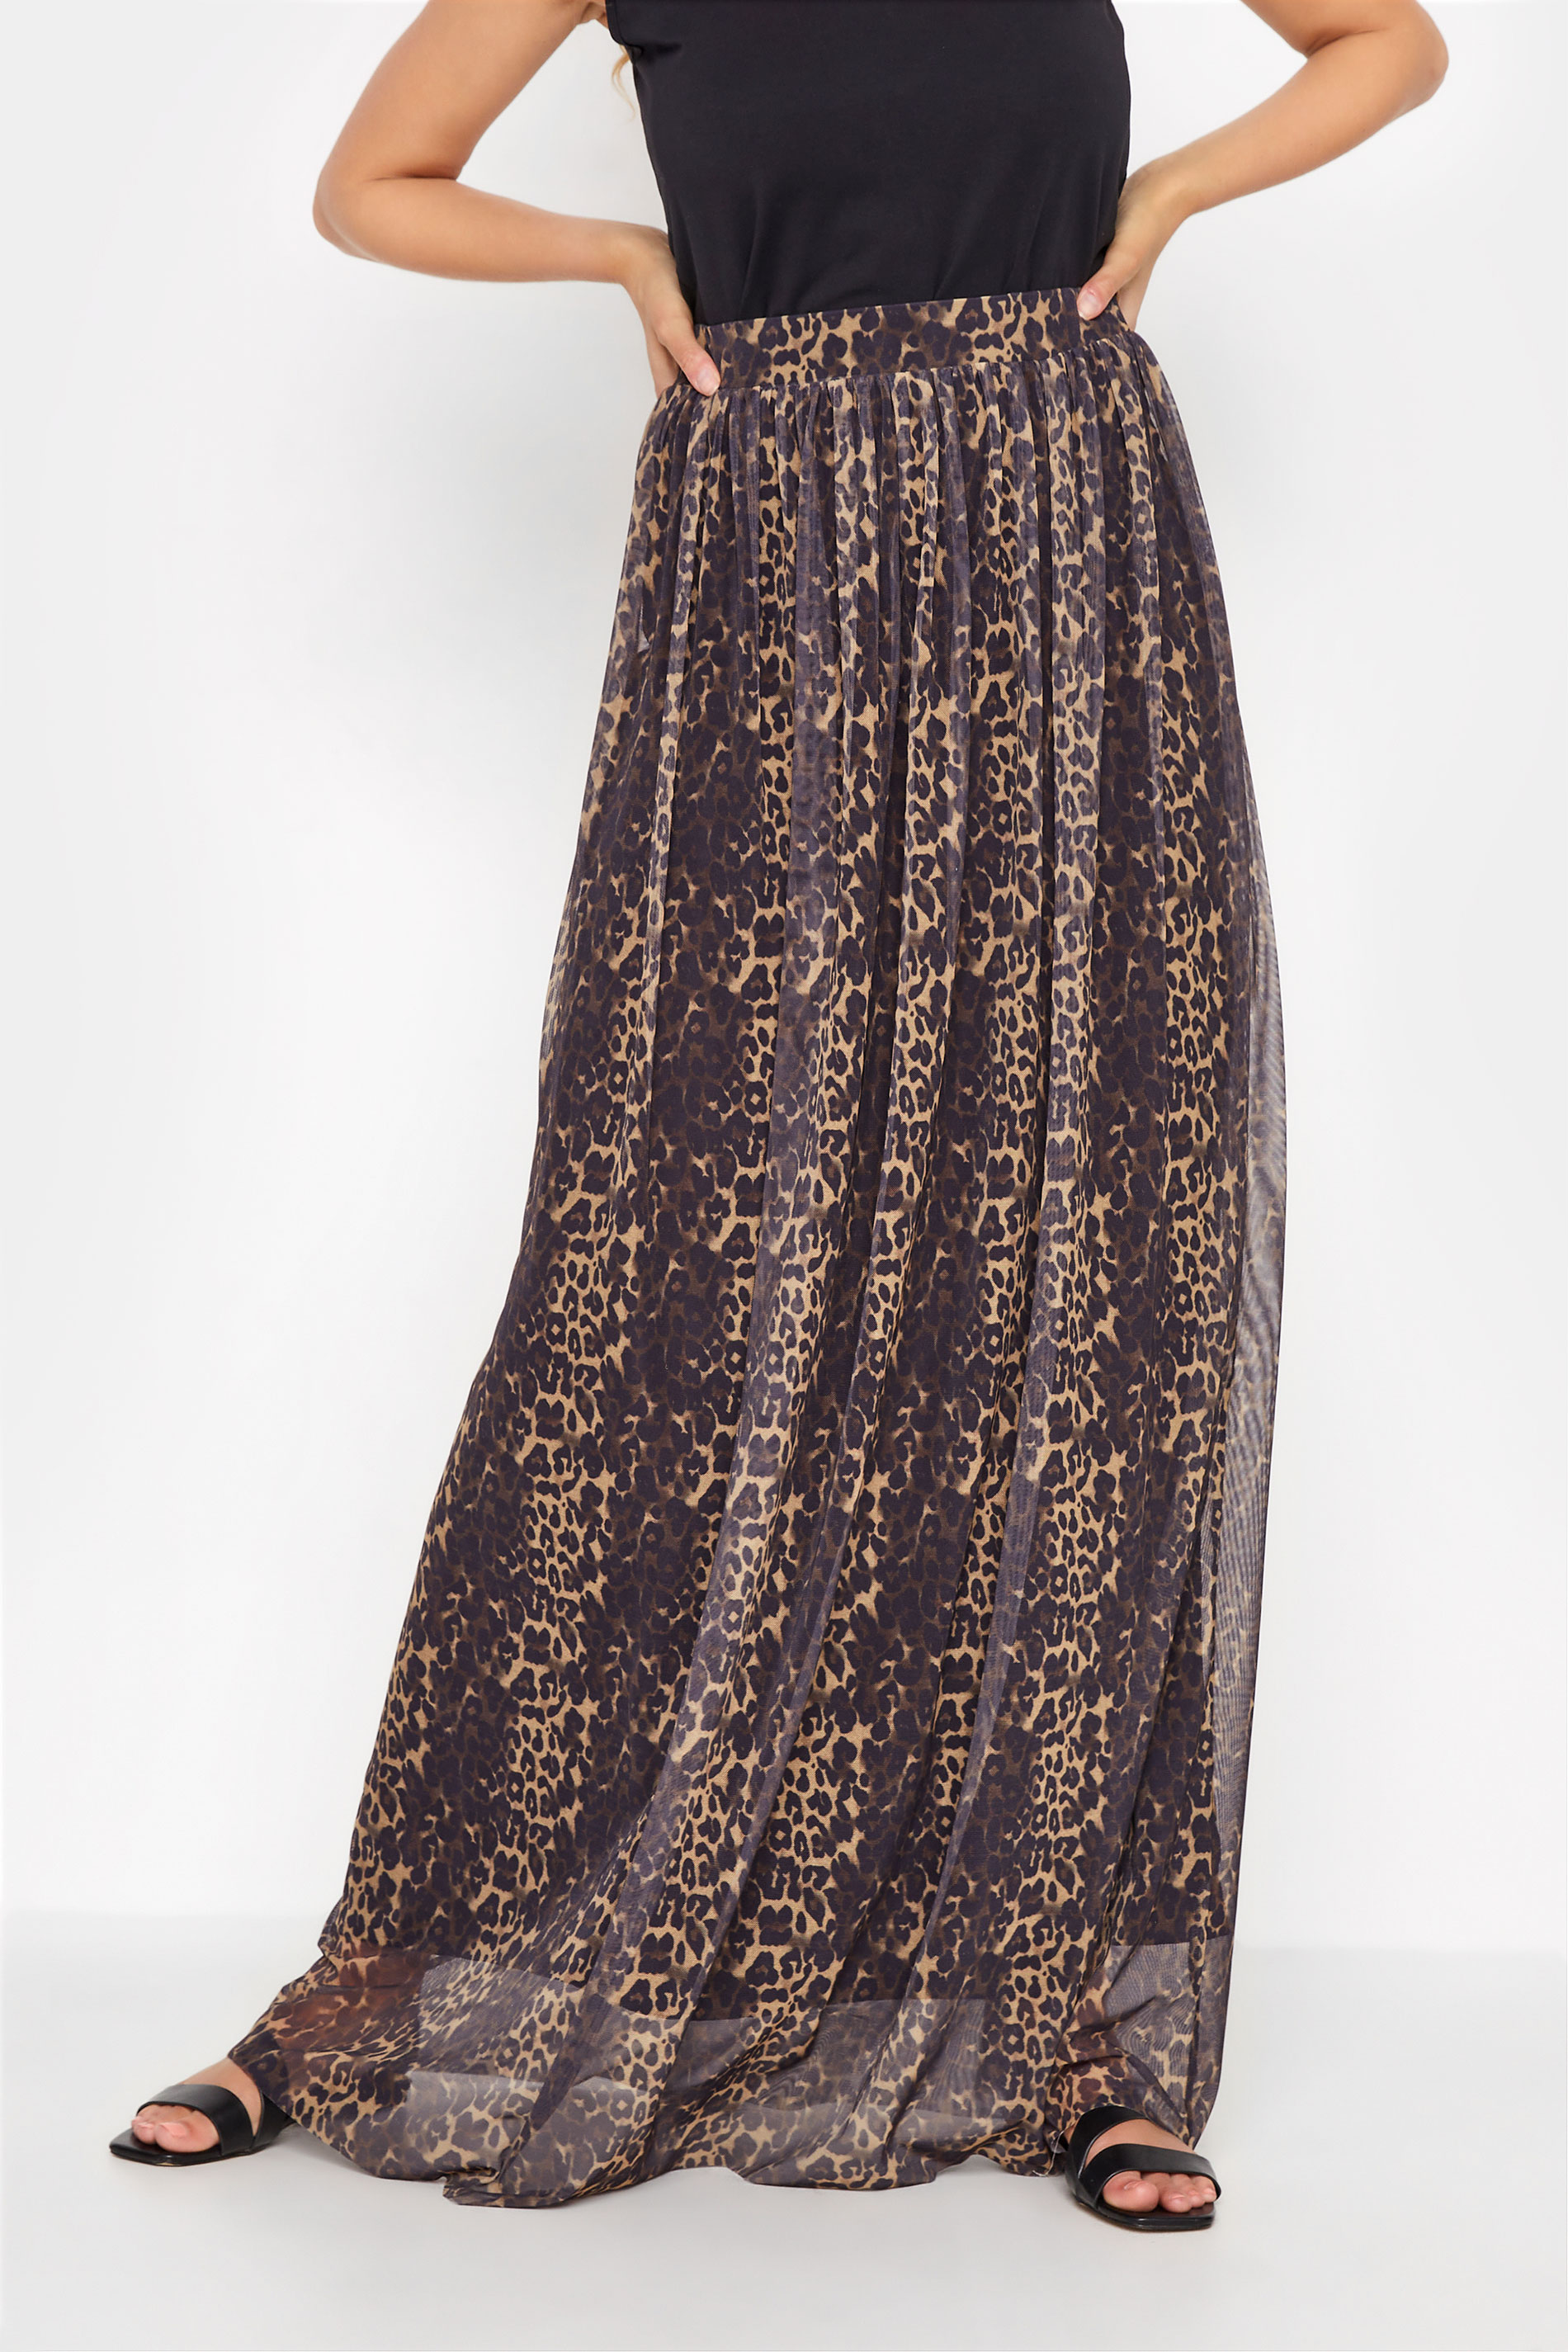 LTS Tall Brown Leopard Print Mesh Maxi Skirt 1